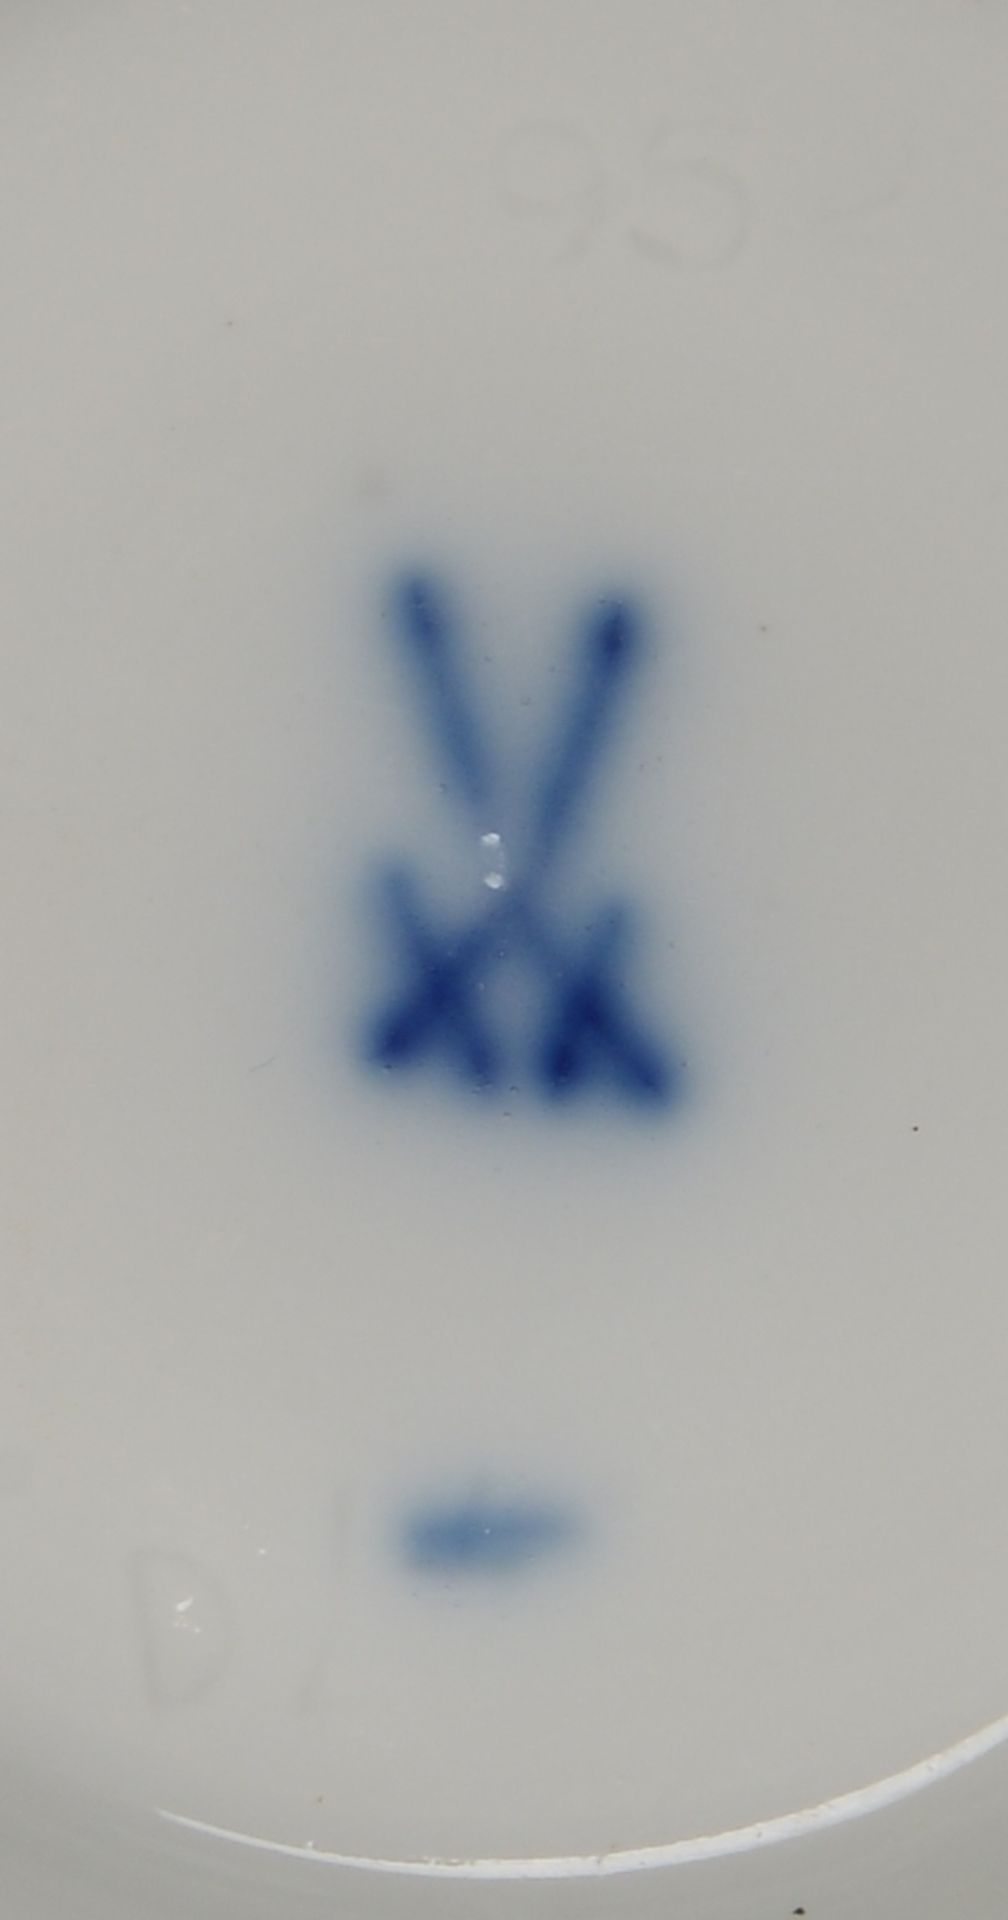 Meissen (I. Wahl), 2 Porzellanteile: 1 Vase, Hoehe 9,5 cm, und 1 Deckeldose, Durchmesser 9 cm - Image 3 of 3